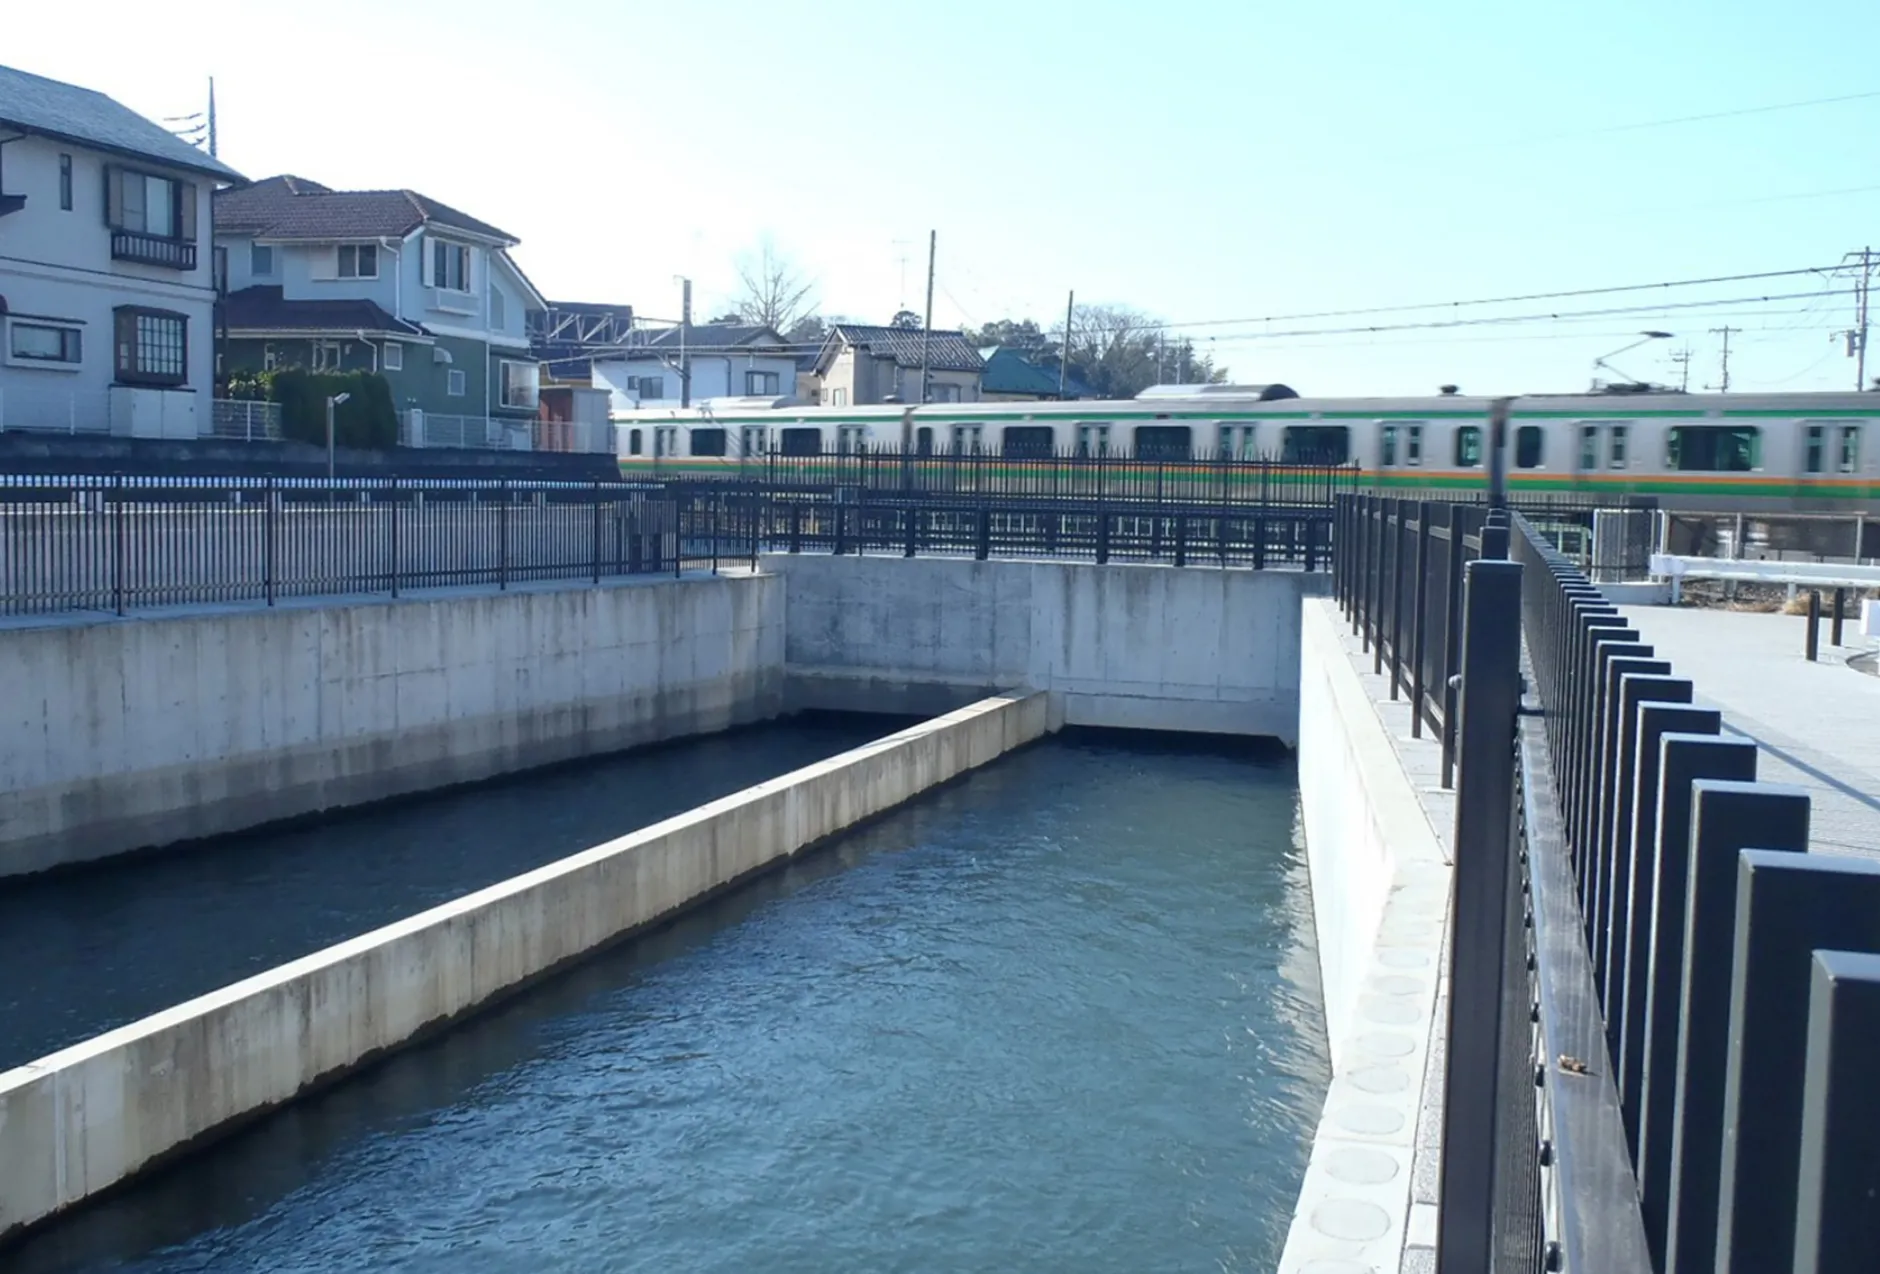 JR高崎線 鴻巣・北鴻巣間武蔵水路改良工事のサムネイル画像です